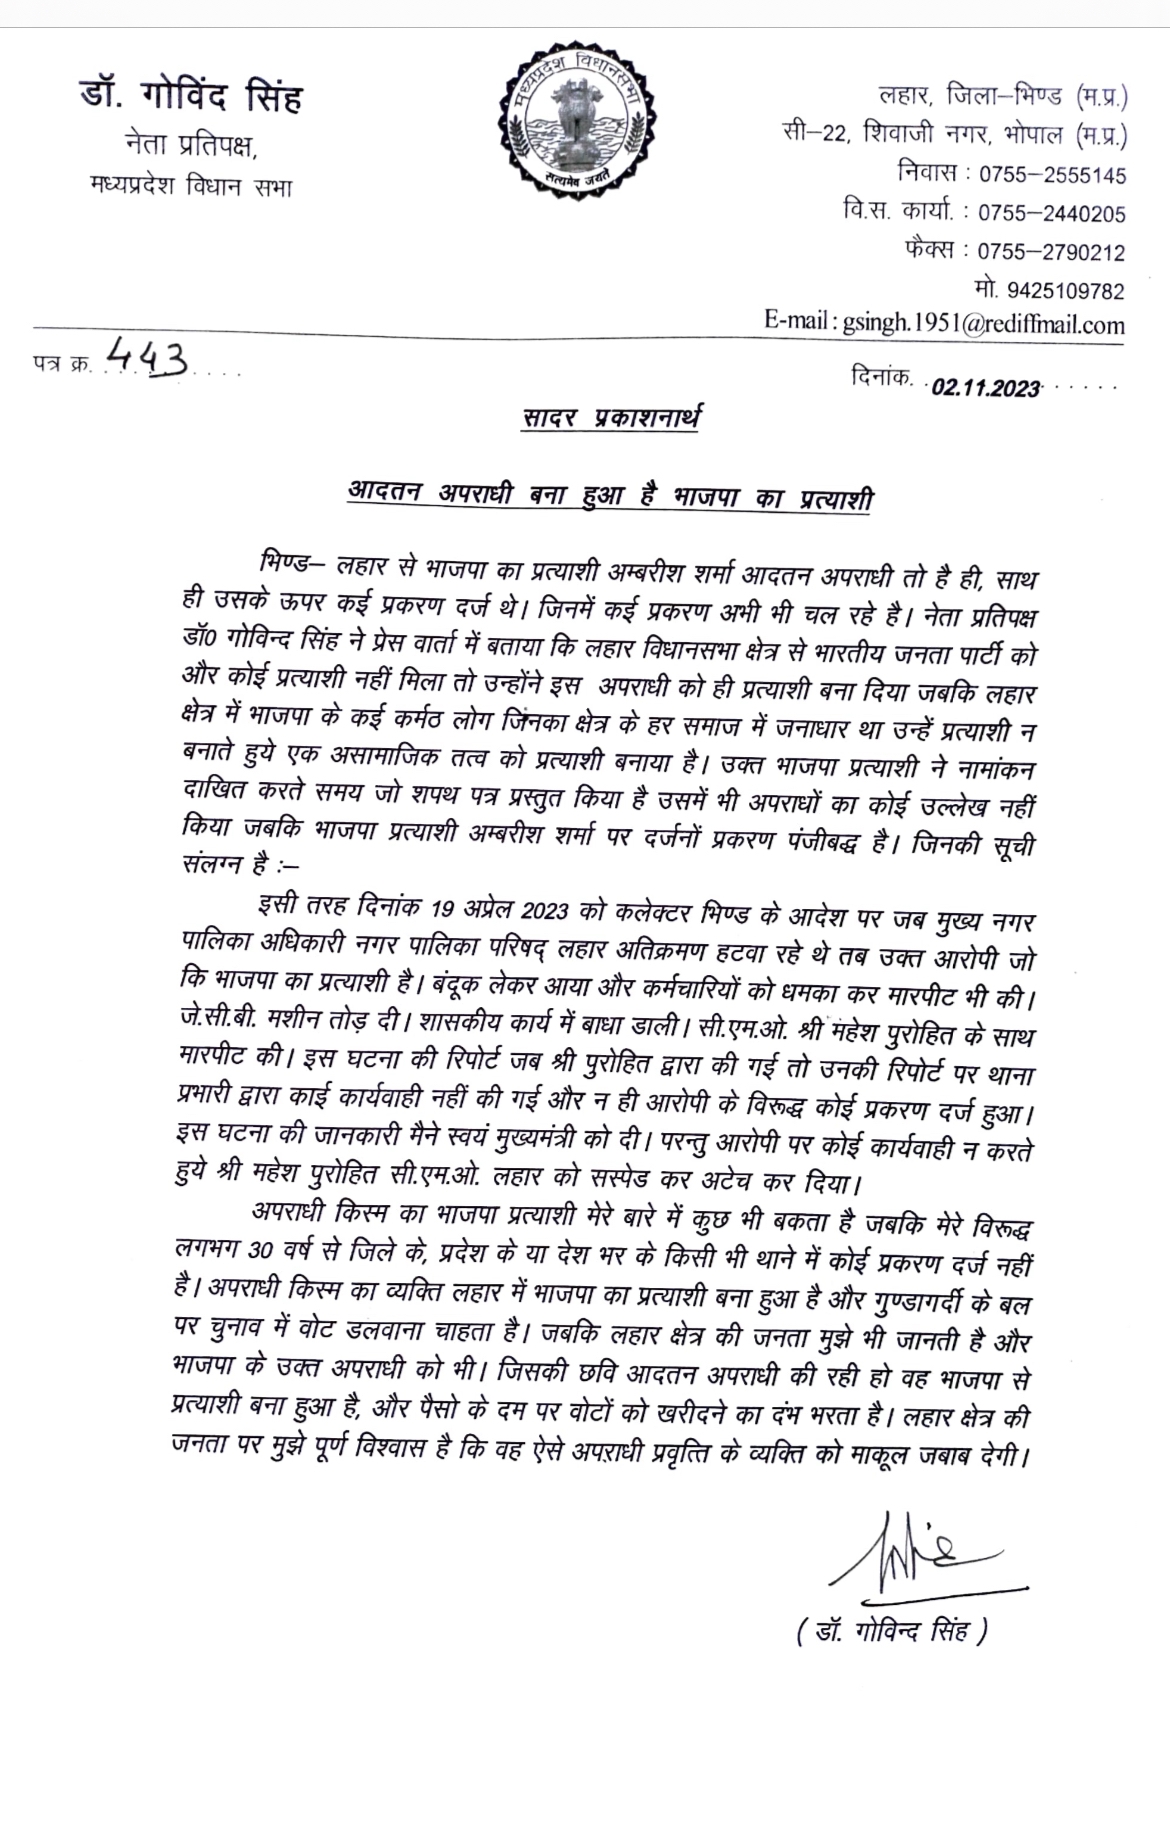 Govind Singh Letter